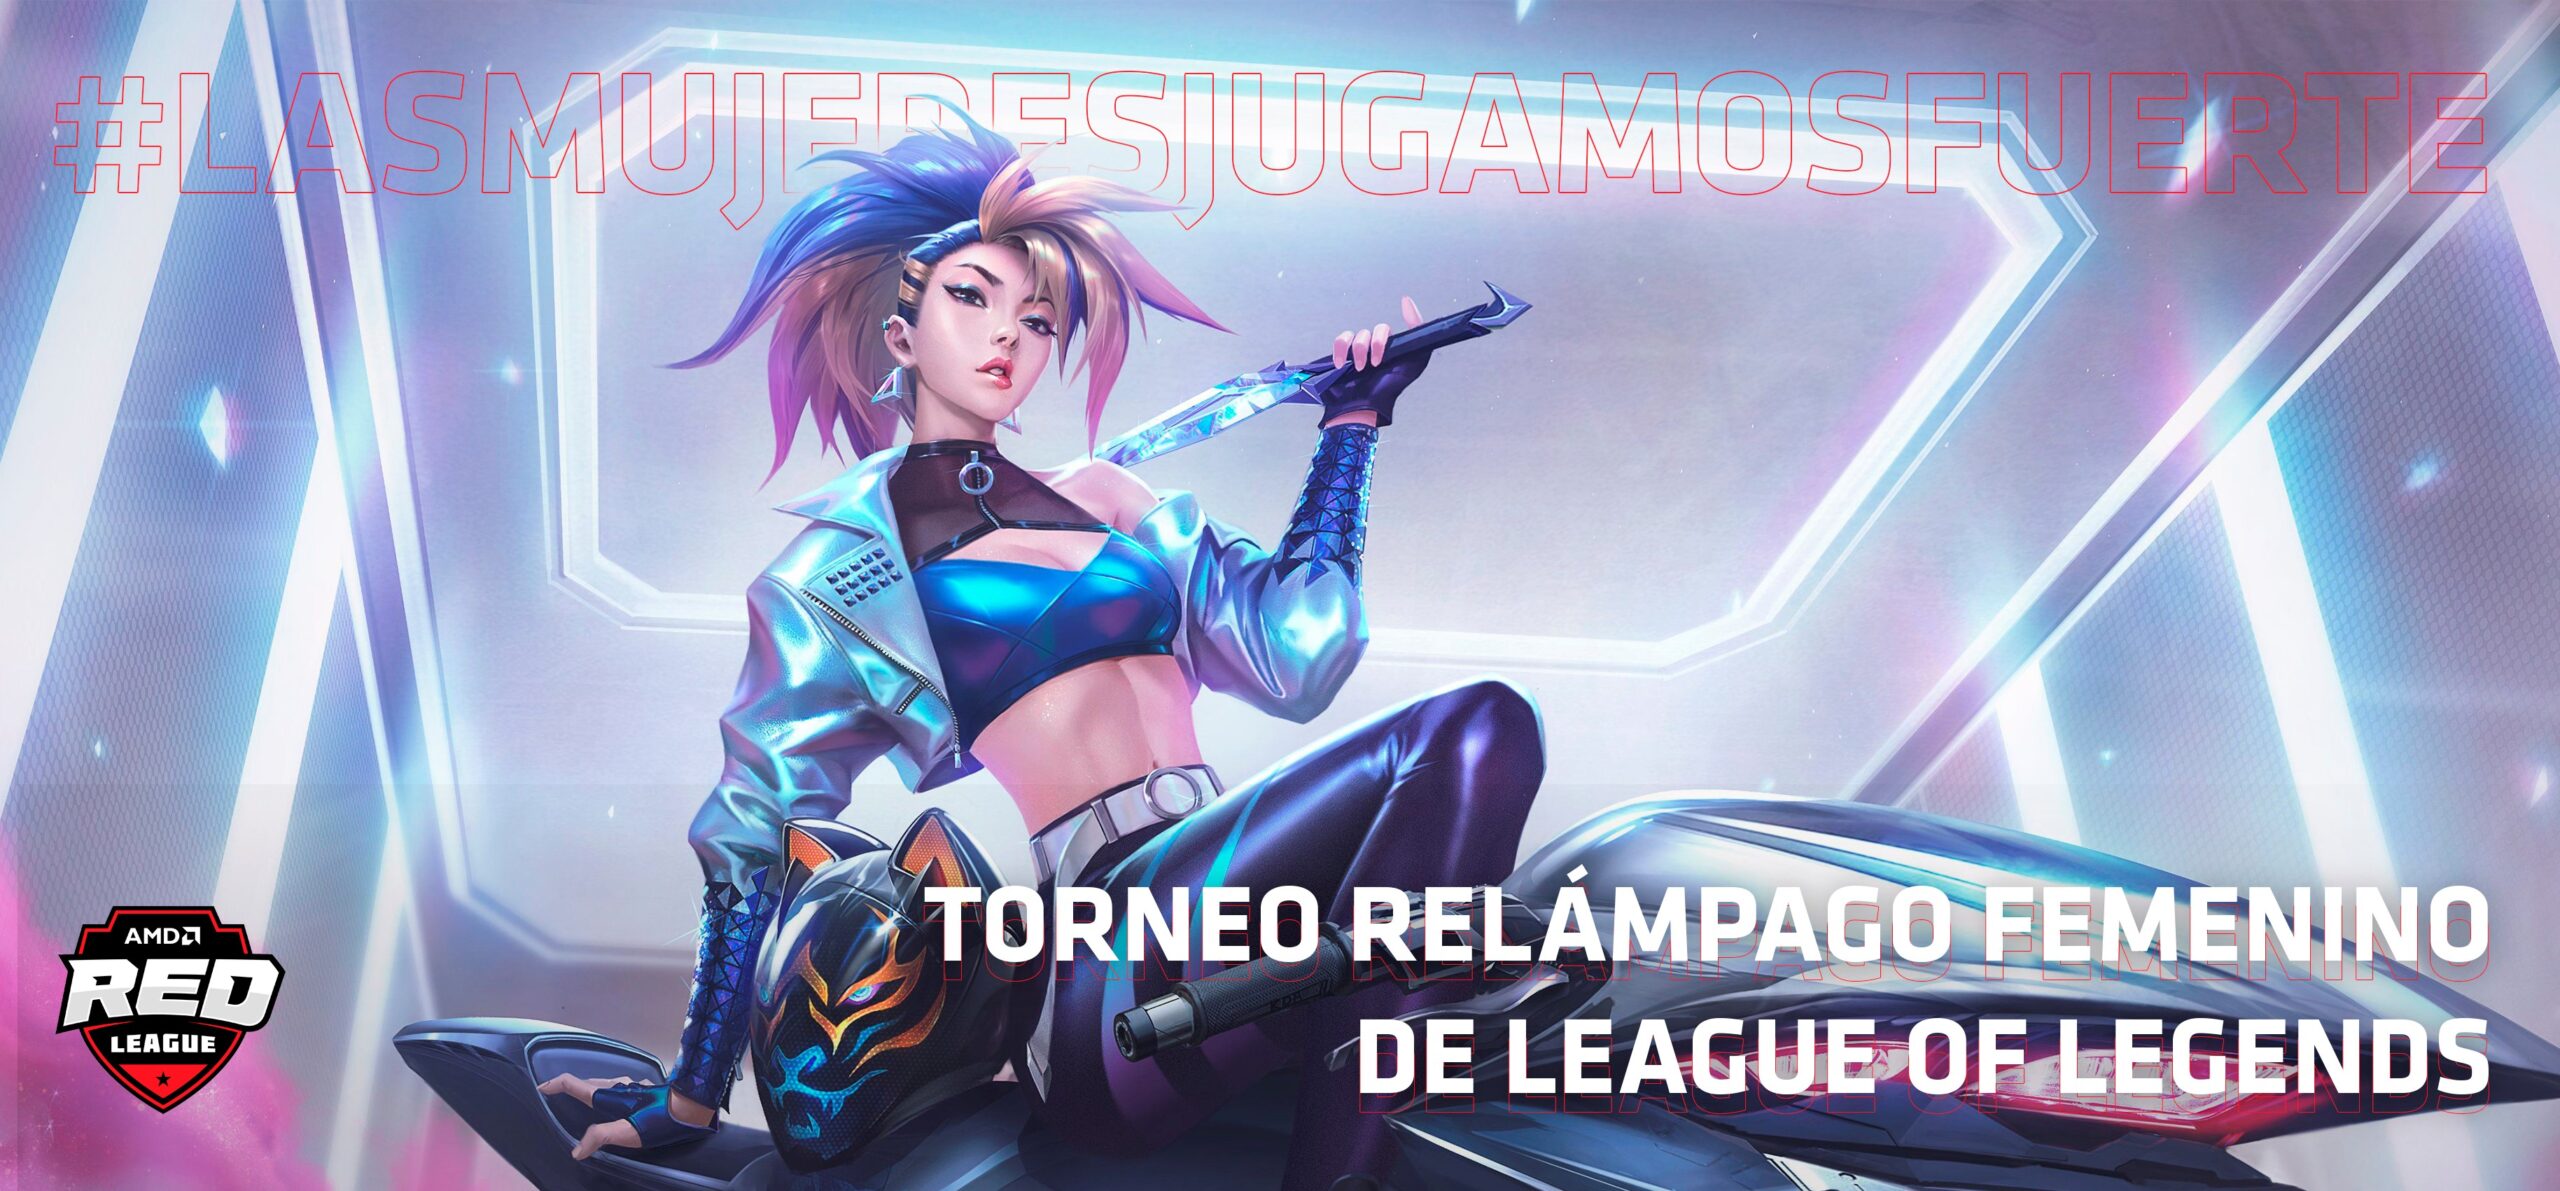 Desde el pasado lunes 21 de diciembre, comenzó el primer Torneo Relámpago Femenino de League of Legends y último torneo del año de la AMD Red League